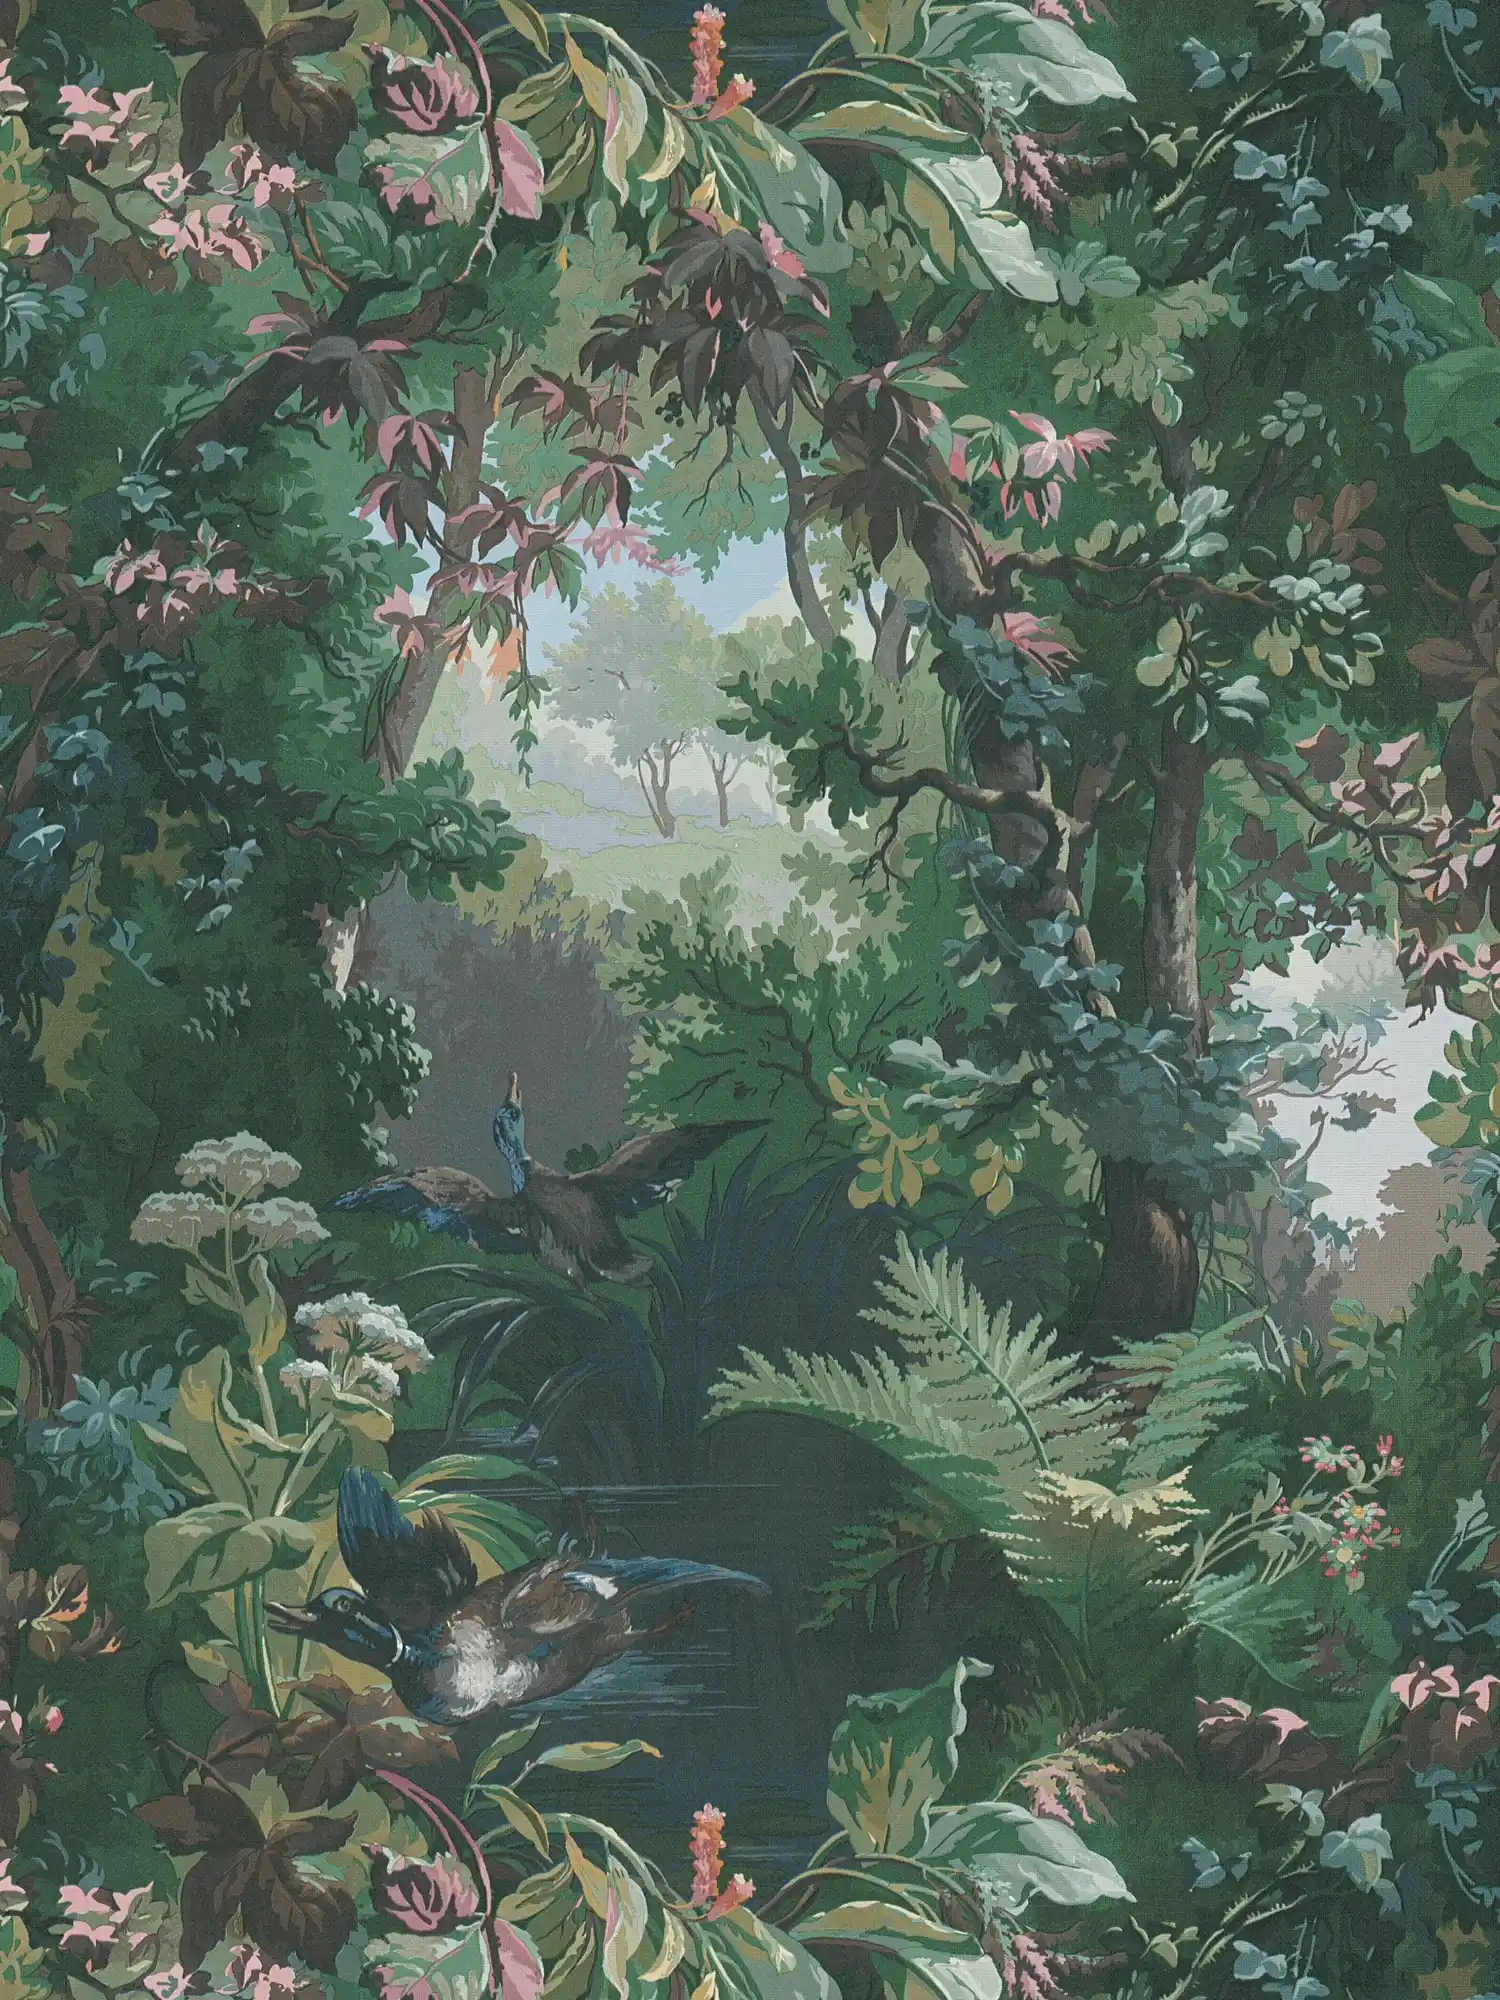 Behang met jachtmotief, bos & eenden - groen, blauw, roze
